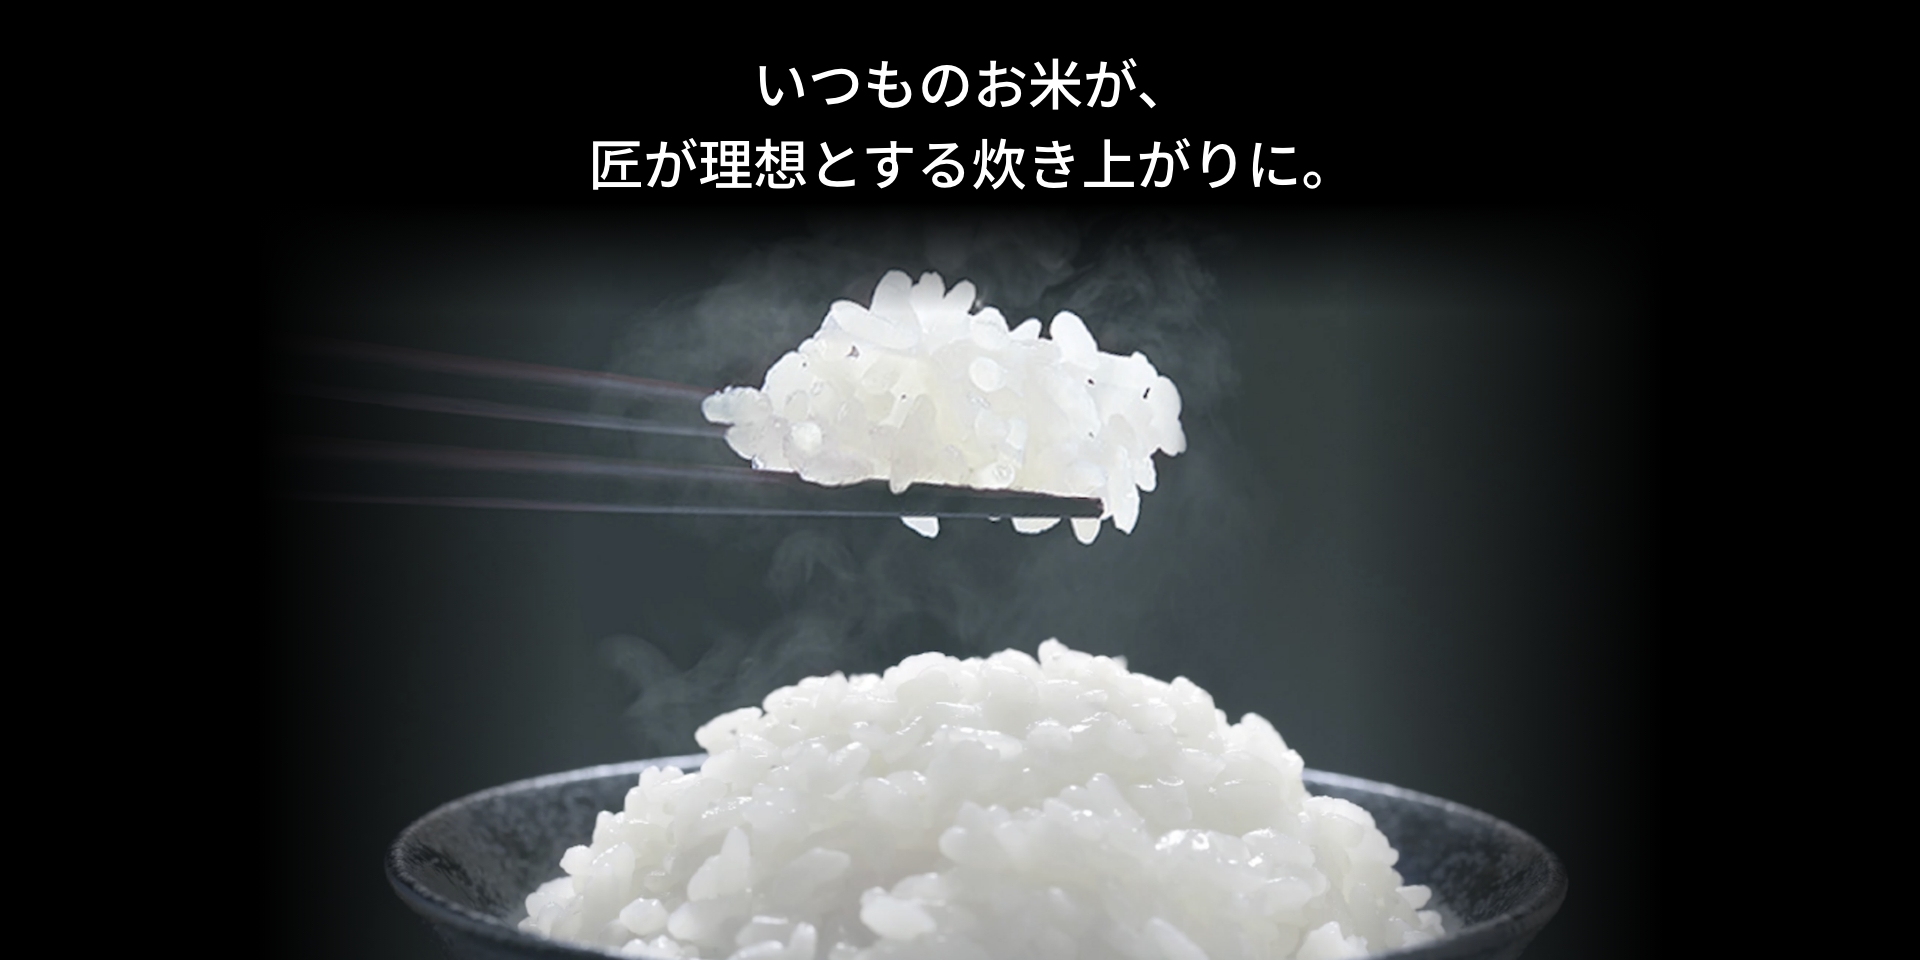 いつものお米が、匠が理想とする炊き上がりに。